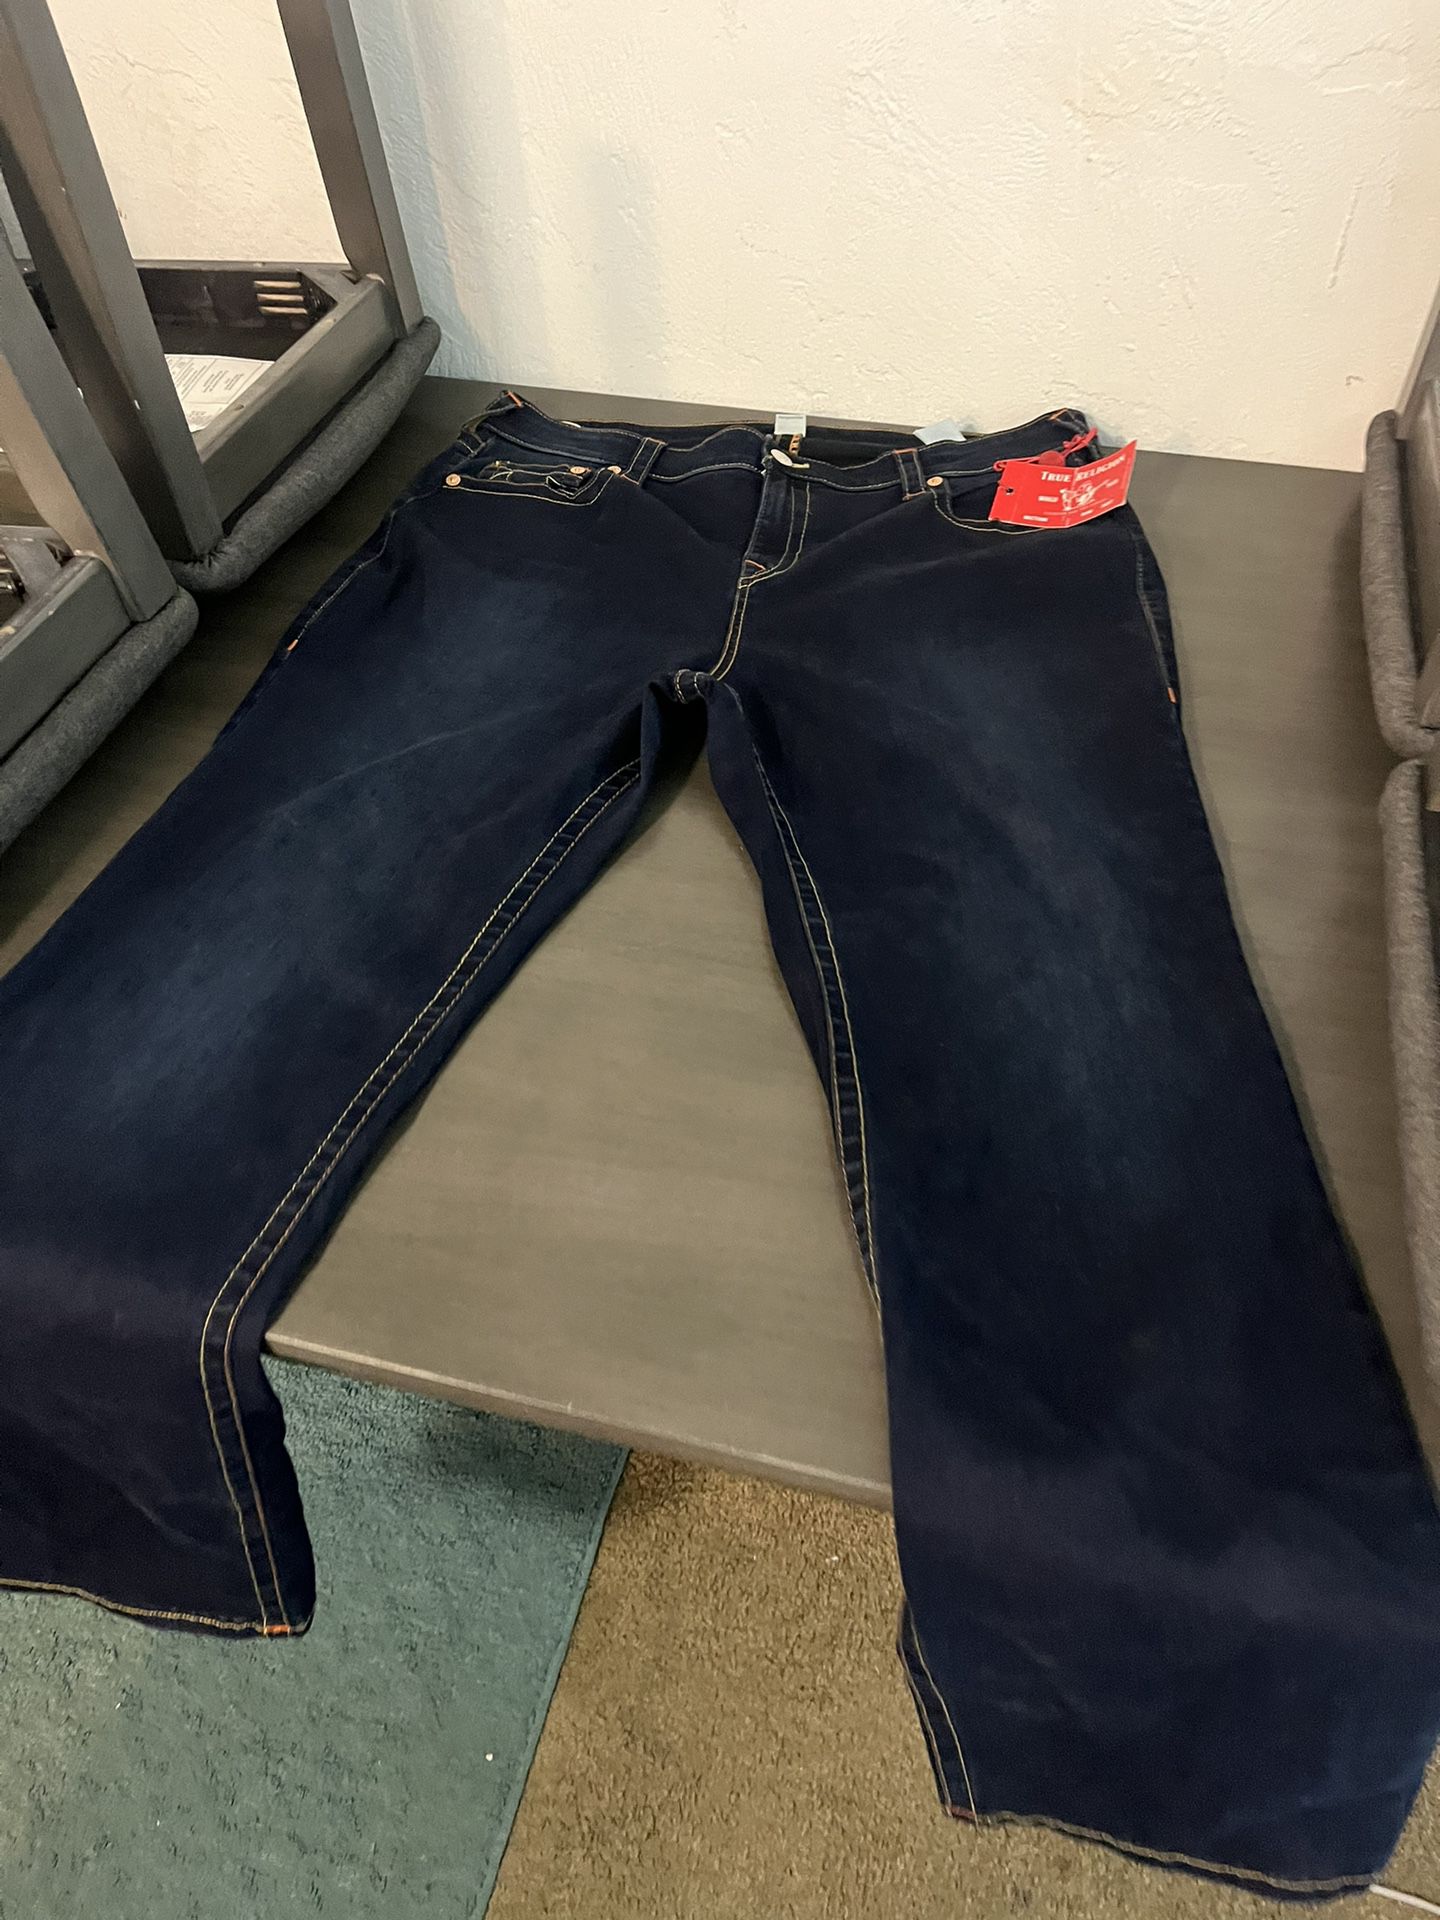 Tru Religion Jeans! (Size 42) Brand New